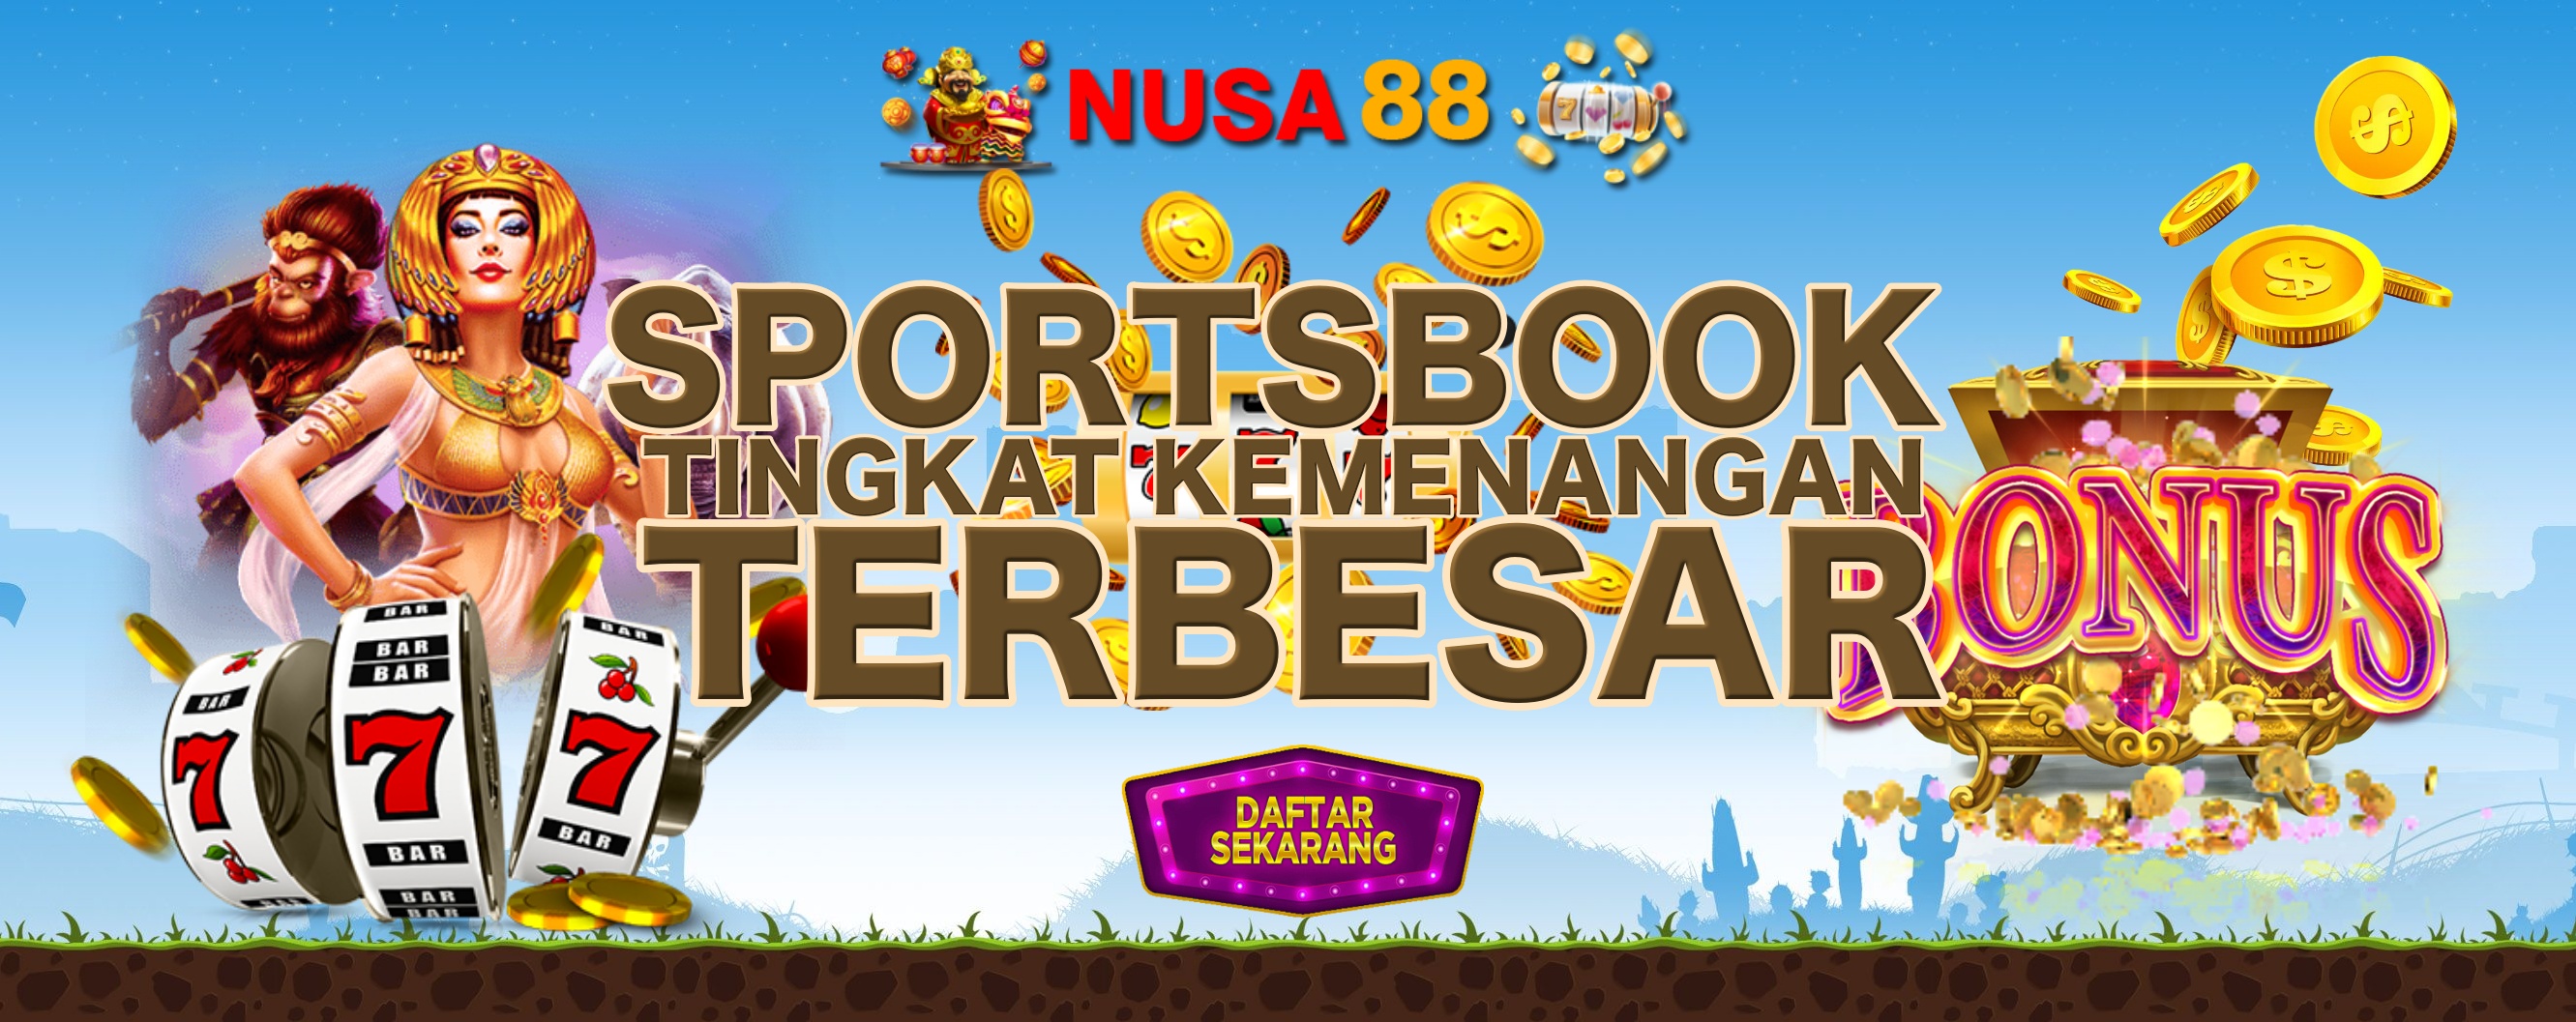 nusa88 sportsbook kemenangan terbaik